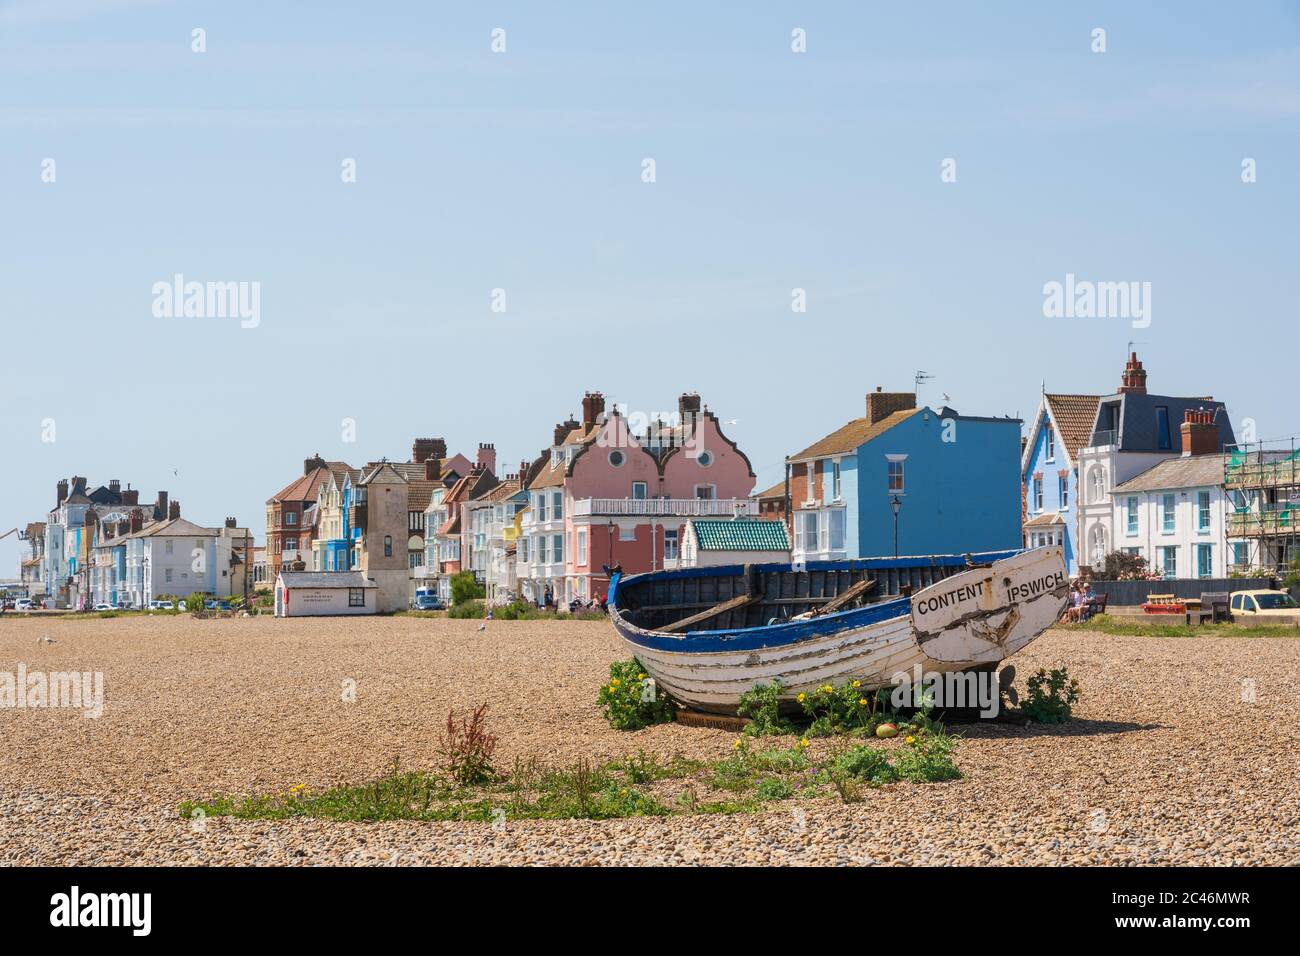 Bateau de pêche abandonné sur la plage avec des bâtiments aux couleurs pastel en arrière-plan, par une journée ensoleillée avec le ciel bleu. Aldeburgh, Suffolk. ROYAUME-UNI Banque D'Images